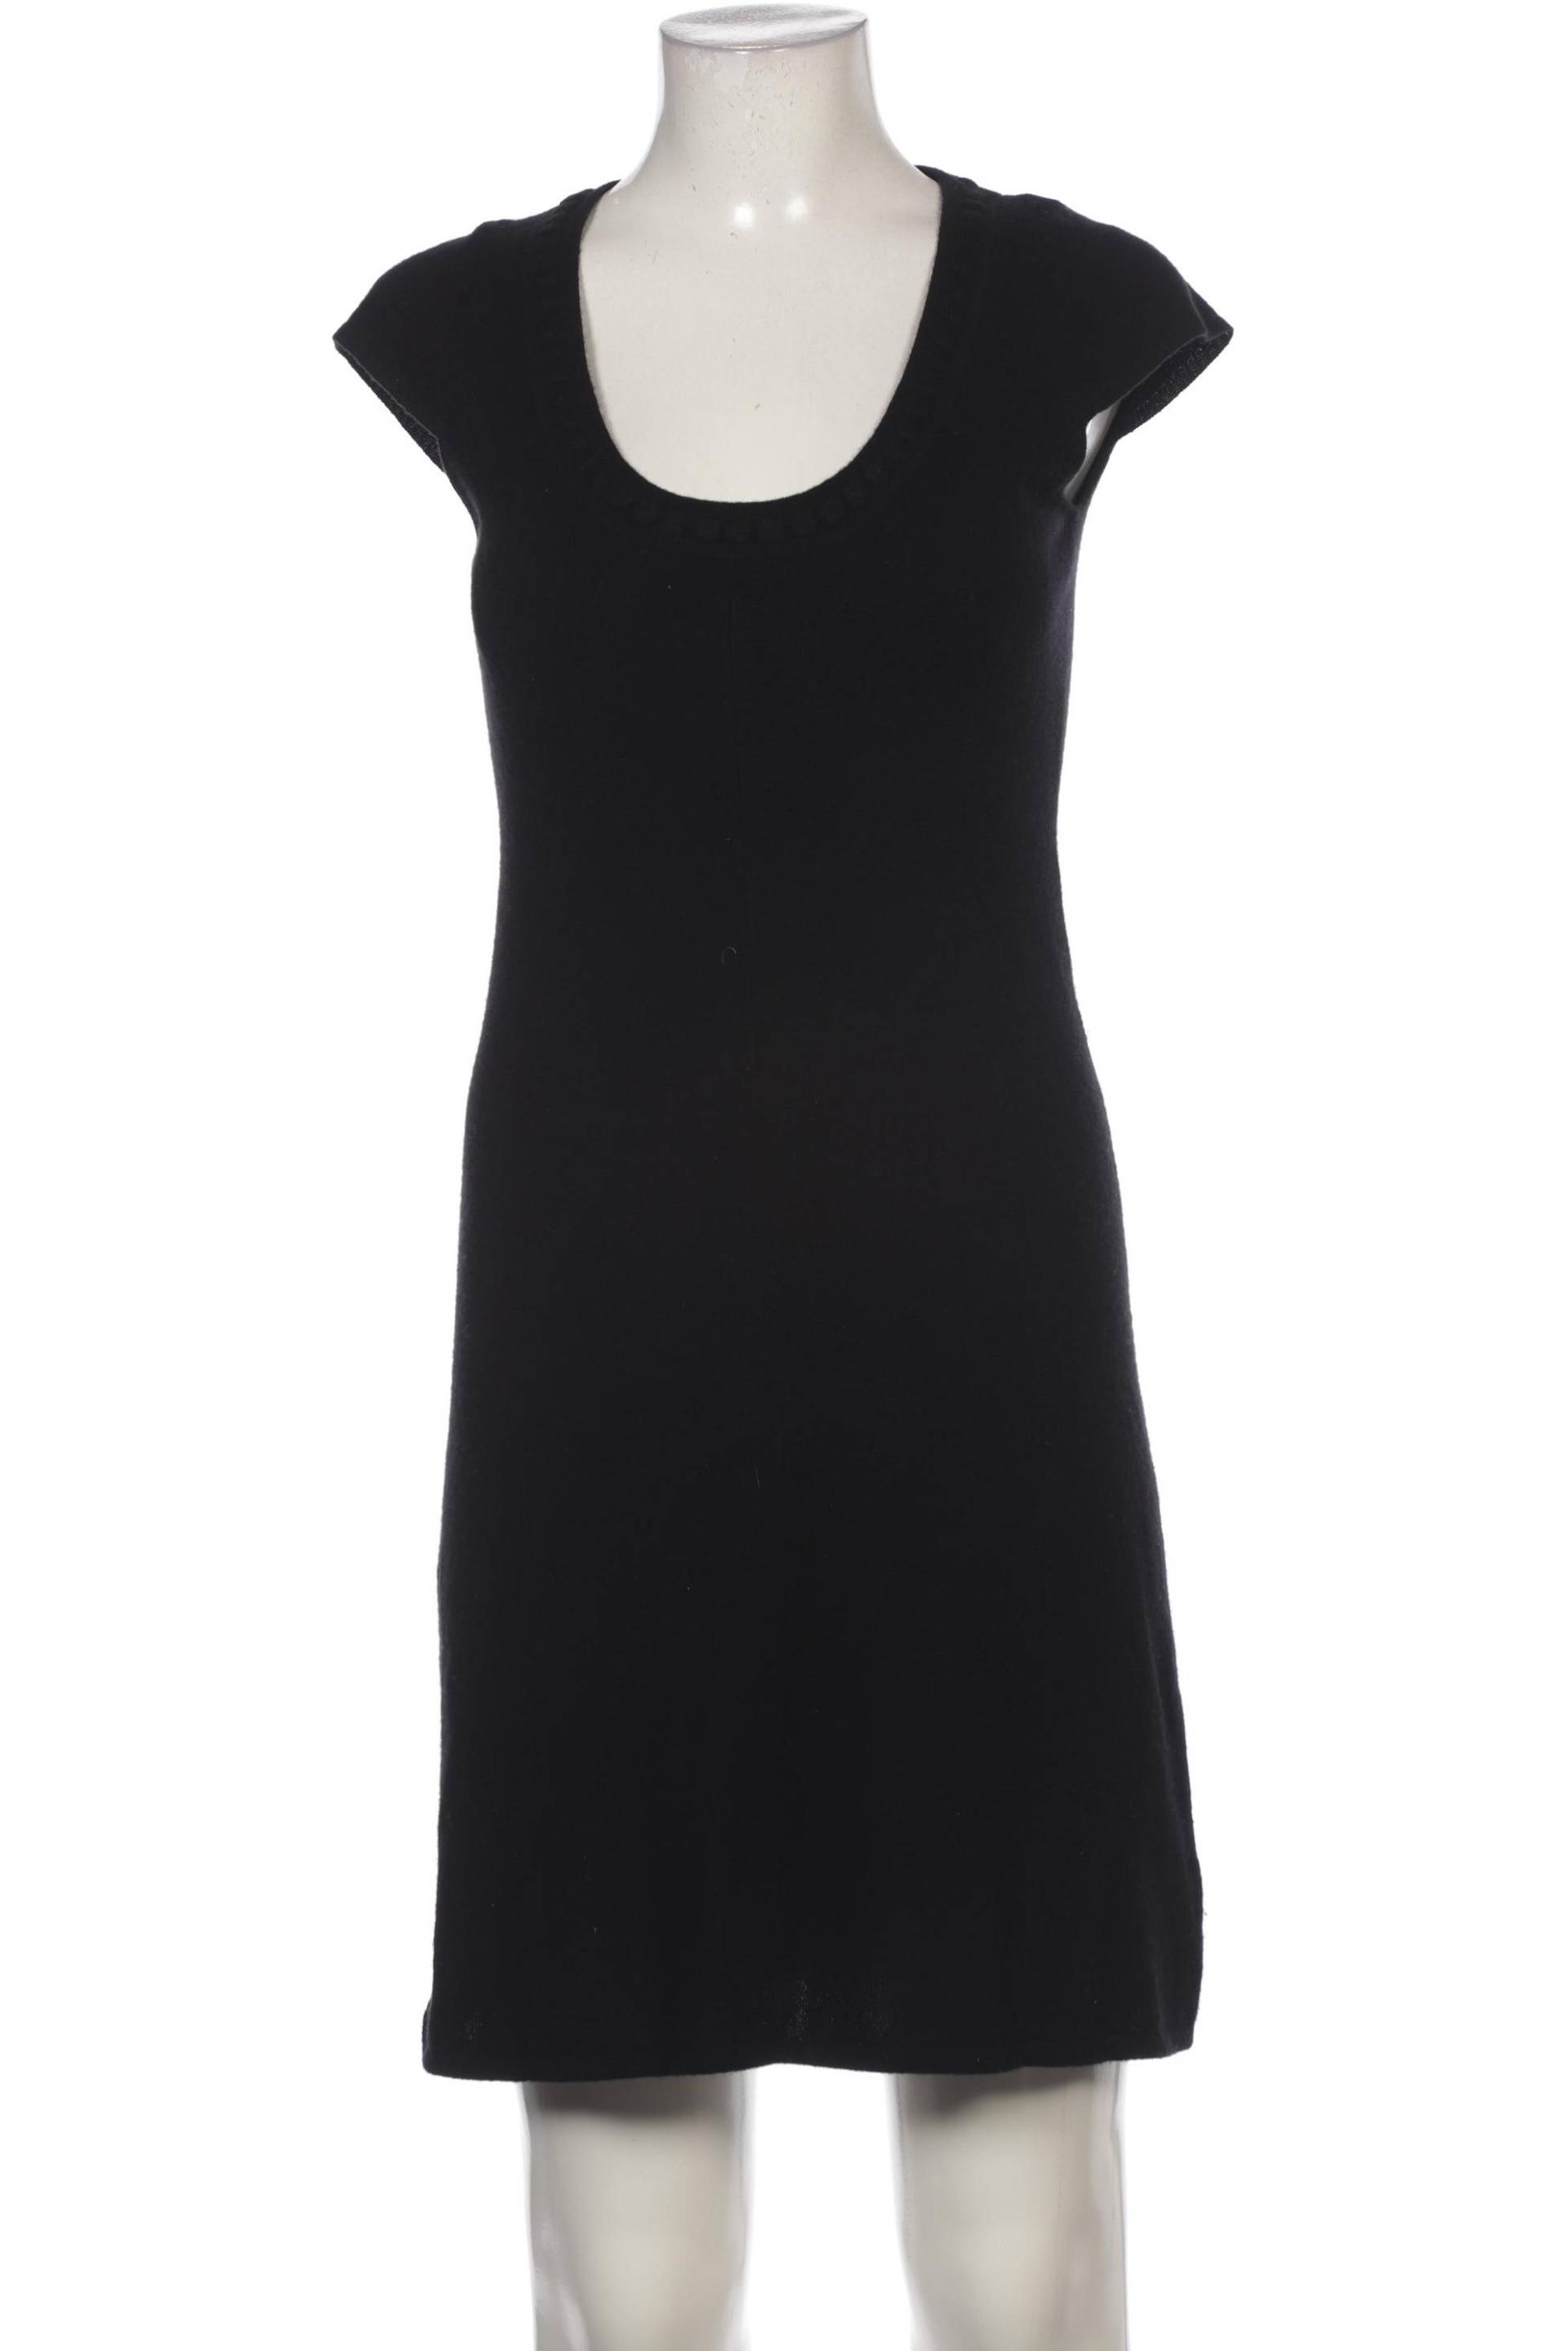 FTC Cashmere Damen Kleid, schwarz, Gr. 36 von FTC Cashmere